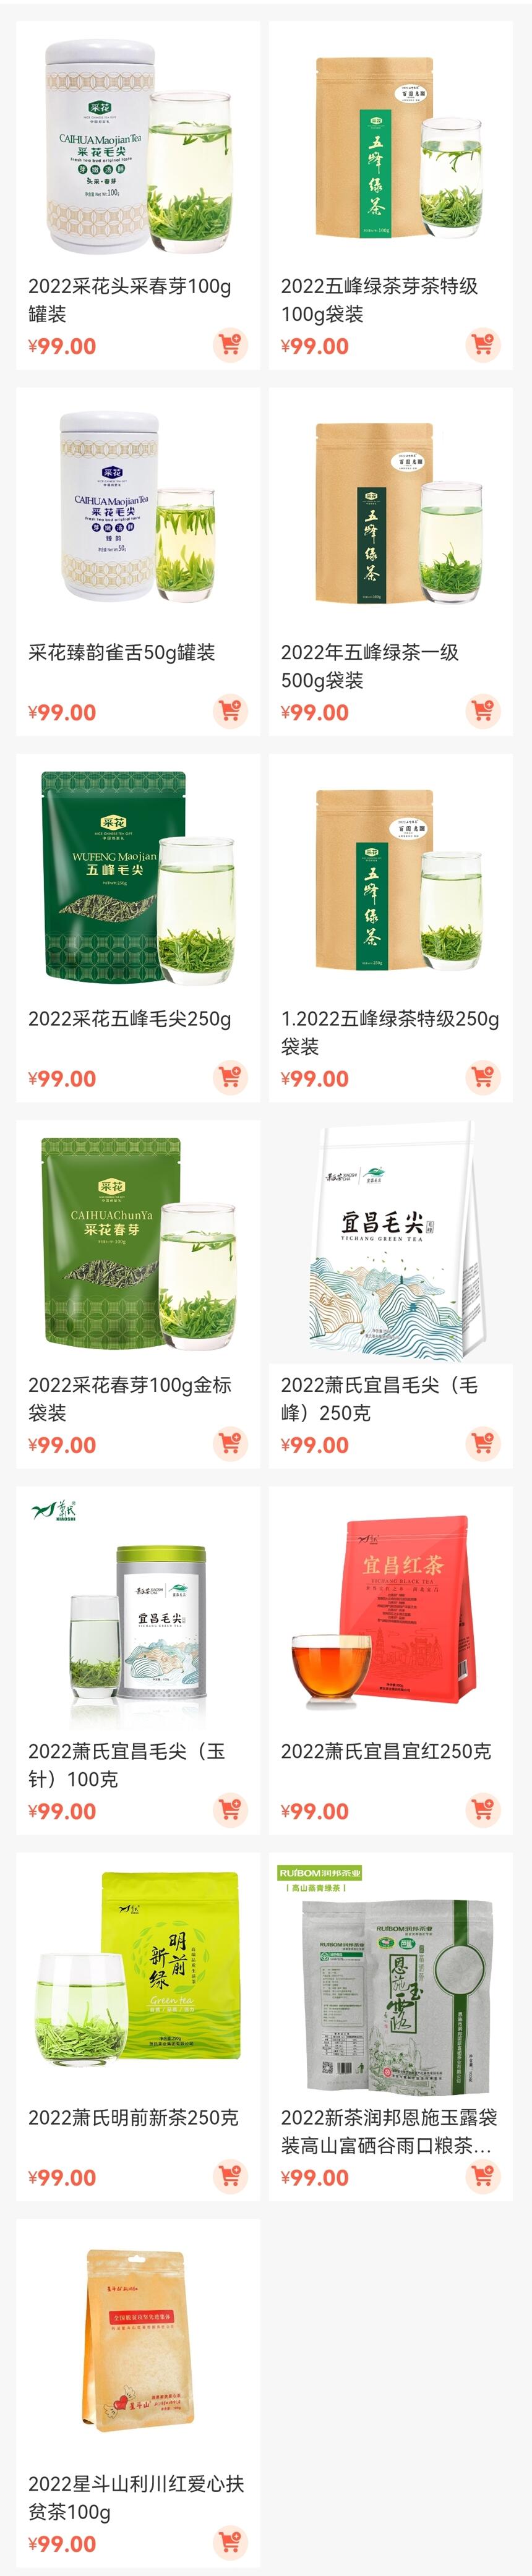 “99元喝湖北名优茶”持续热销，首周订单破200